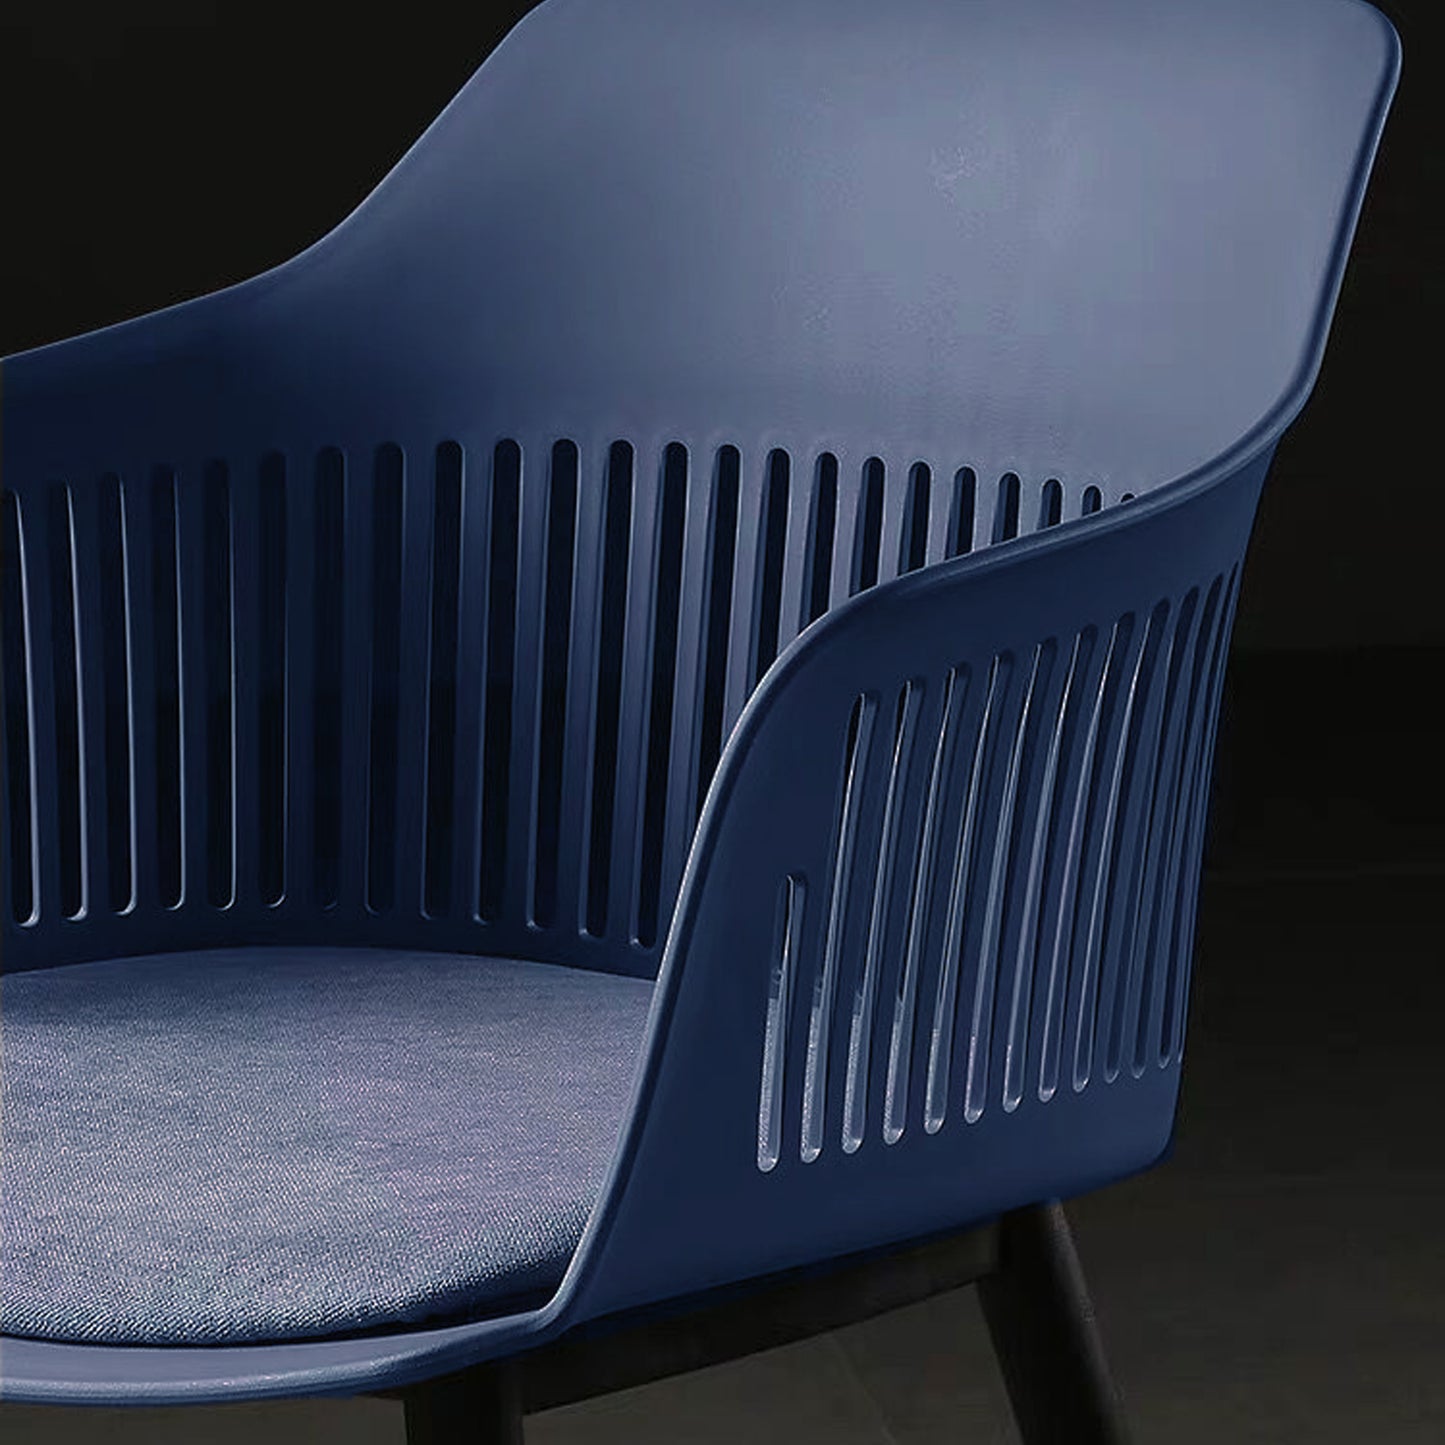 Lot de 4 chaises modernes en résine bleu et pieds design noirs